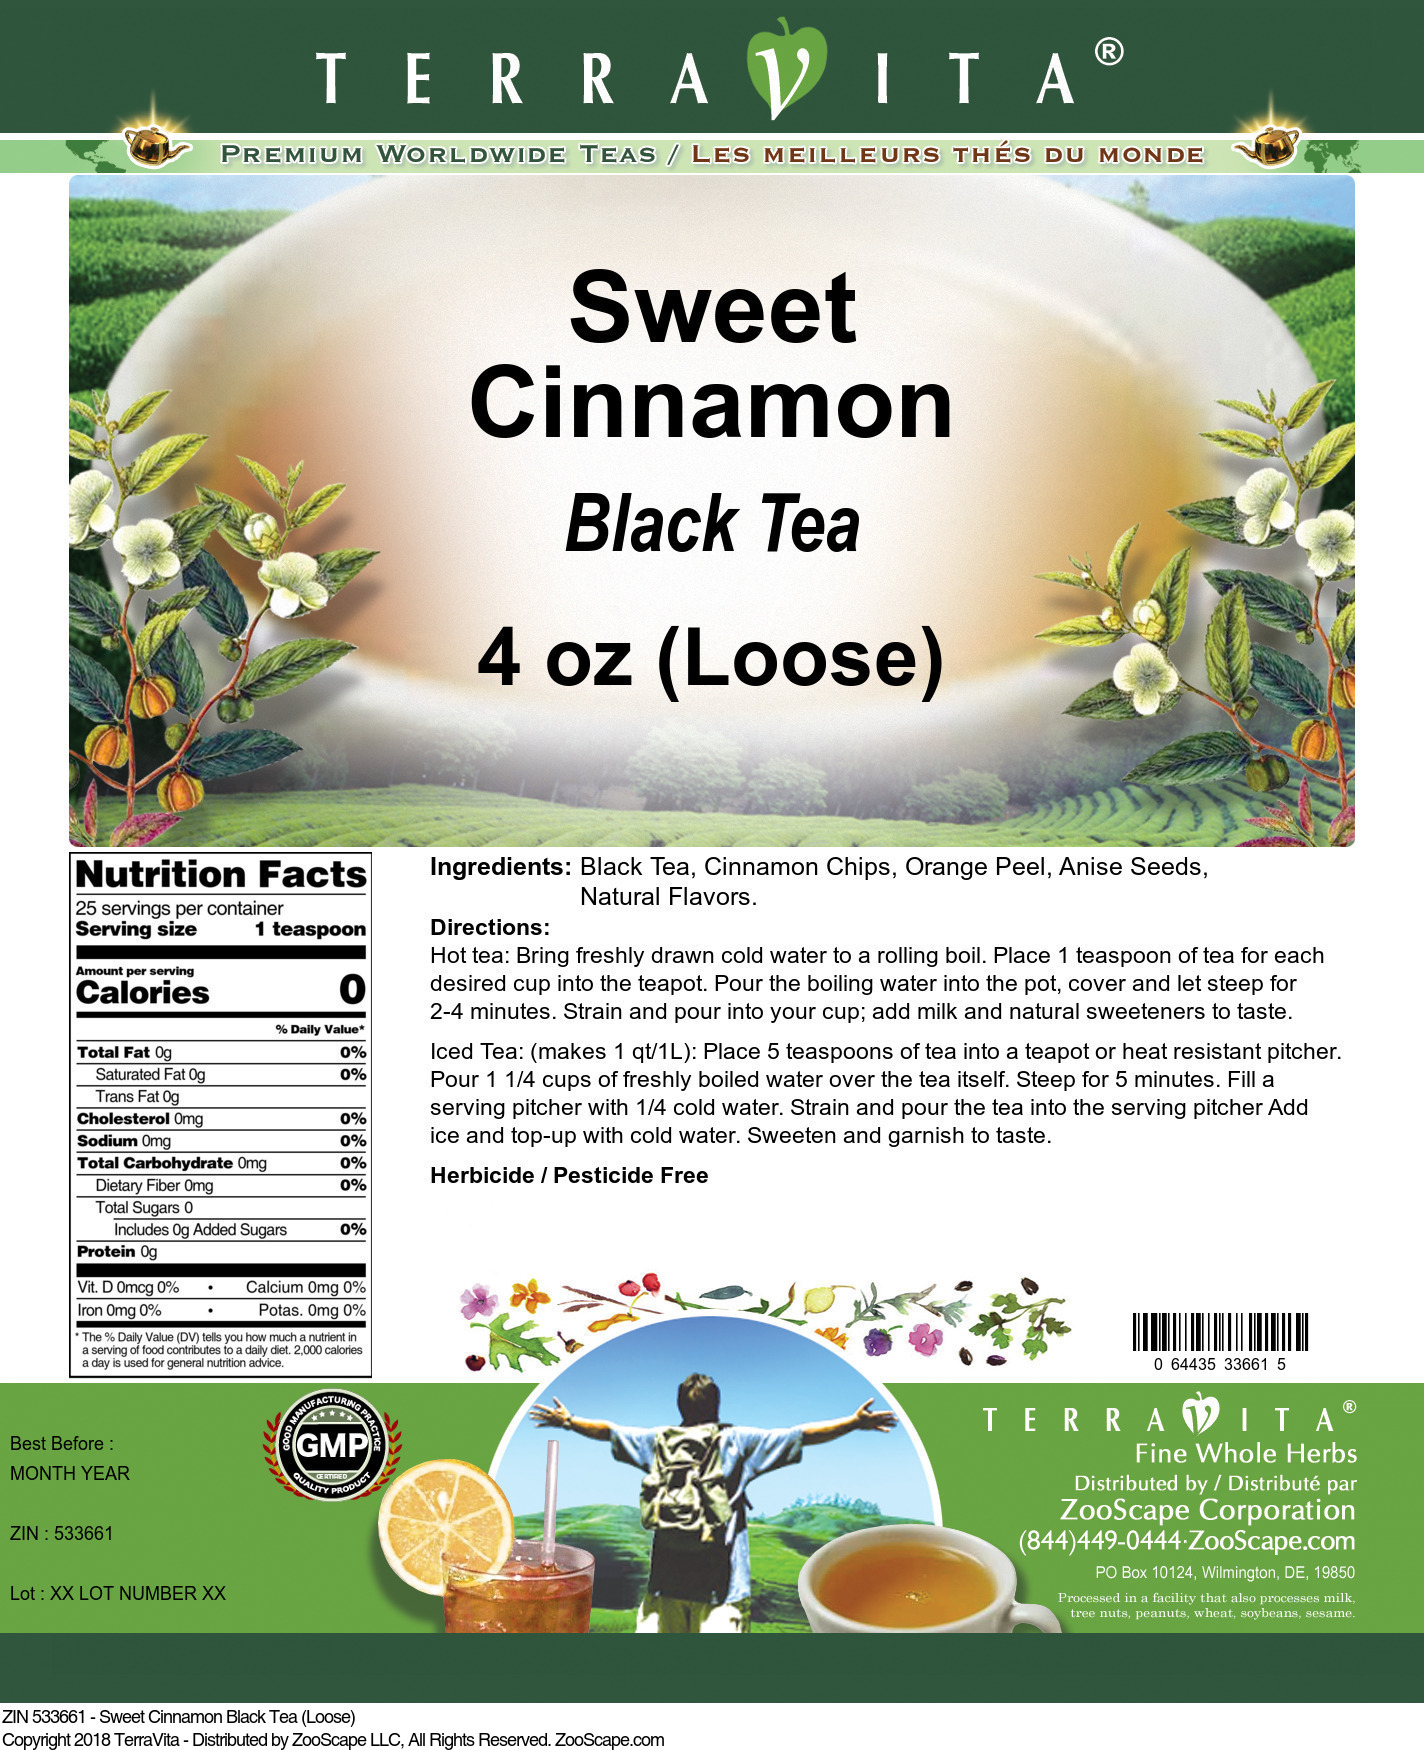 Sweet Cinnamon Black Tea (Loose) - Label